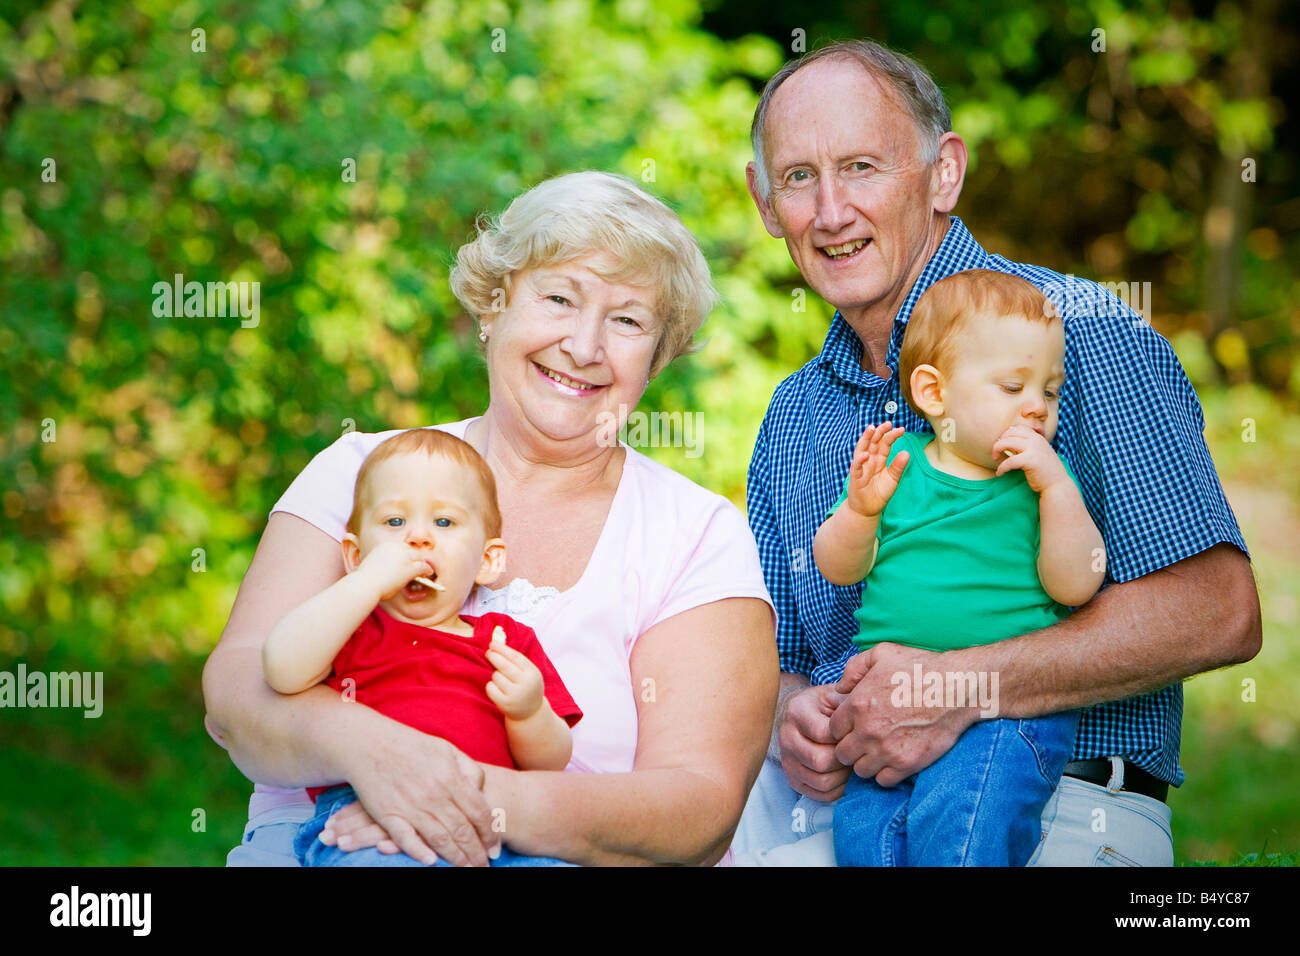 Rothaarige Twin Enkel mit Fokus halten auf glückliche Großeltern Stockfoto